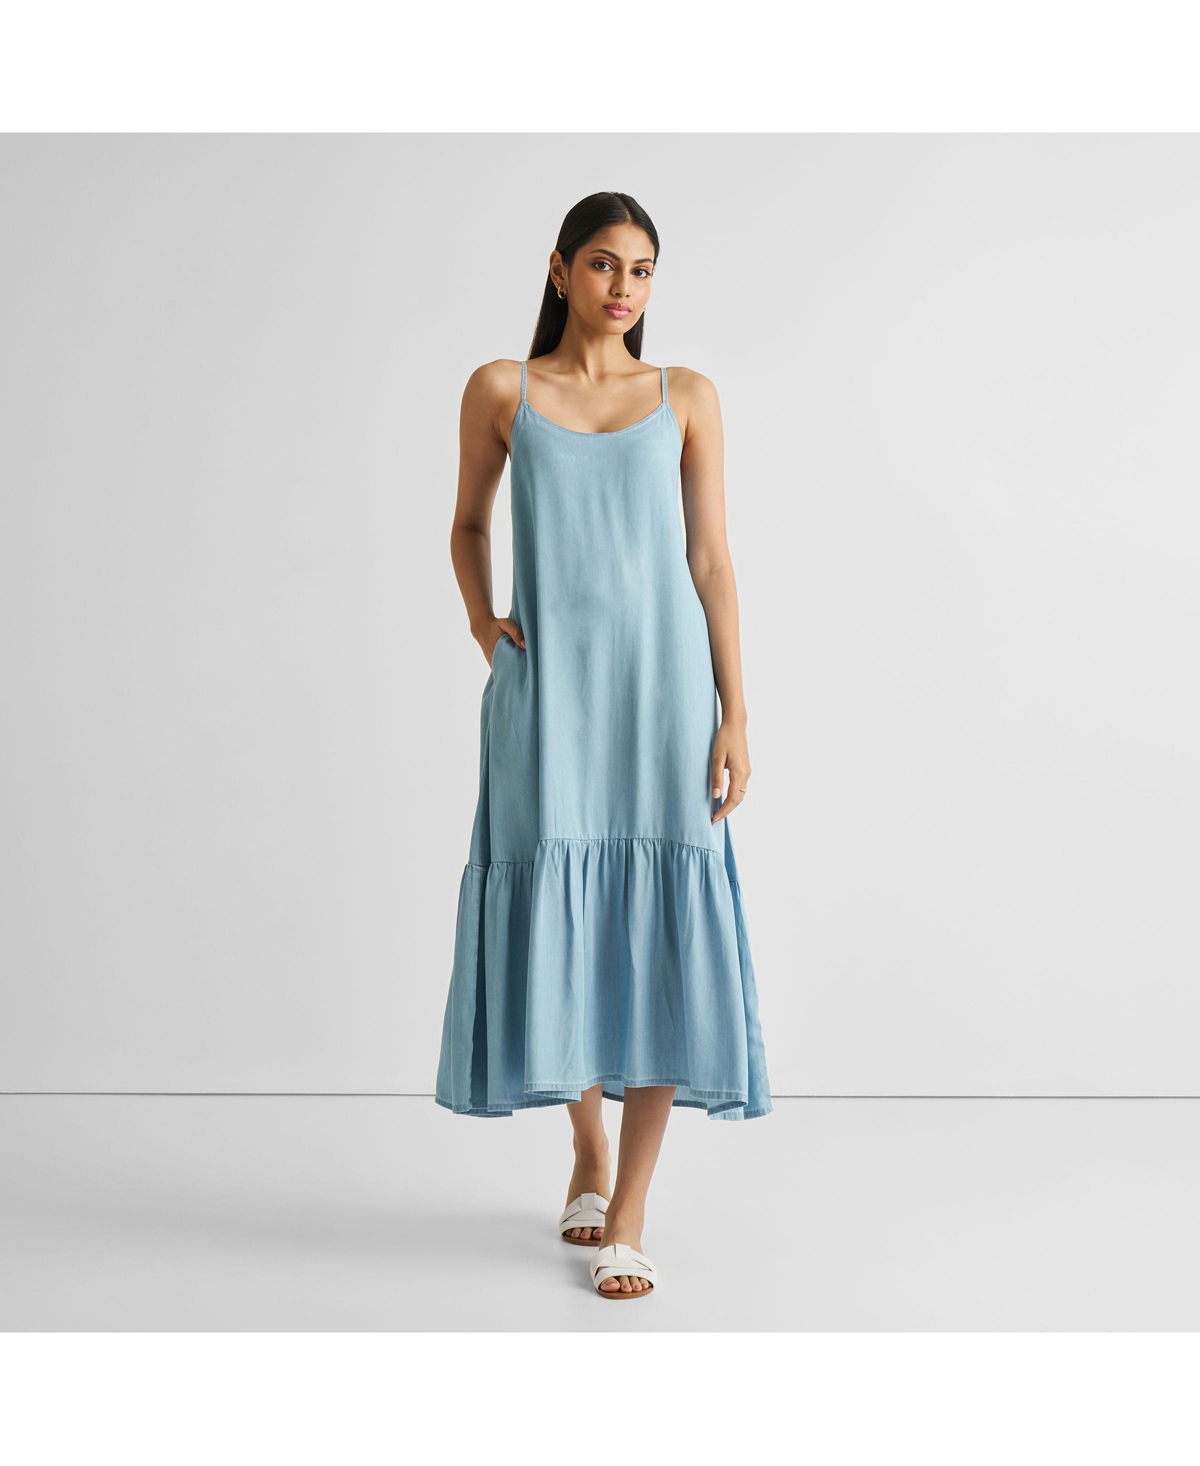 Women's Flowy Maxi Dress - Ocean blue